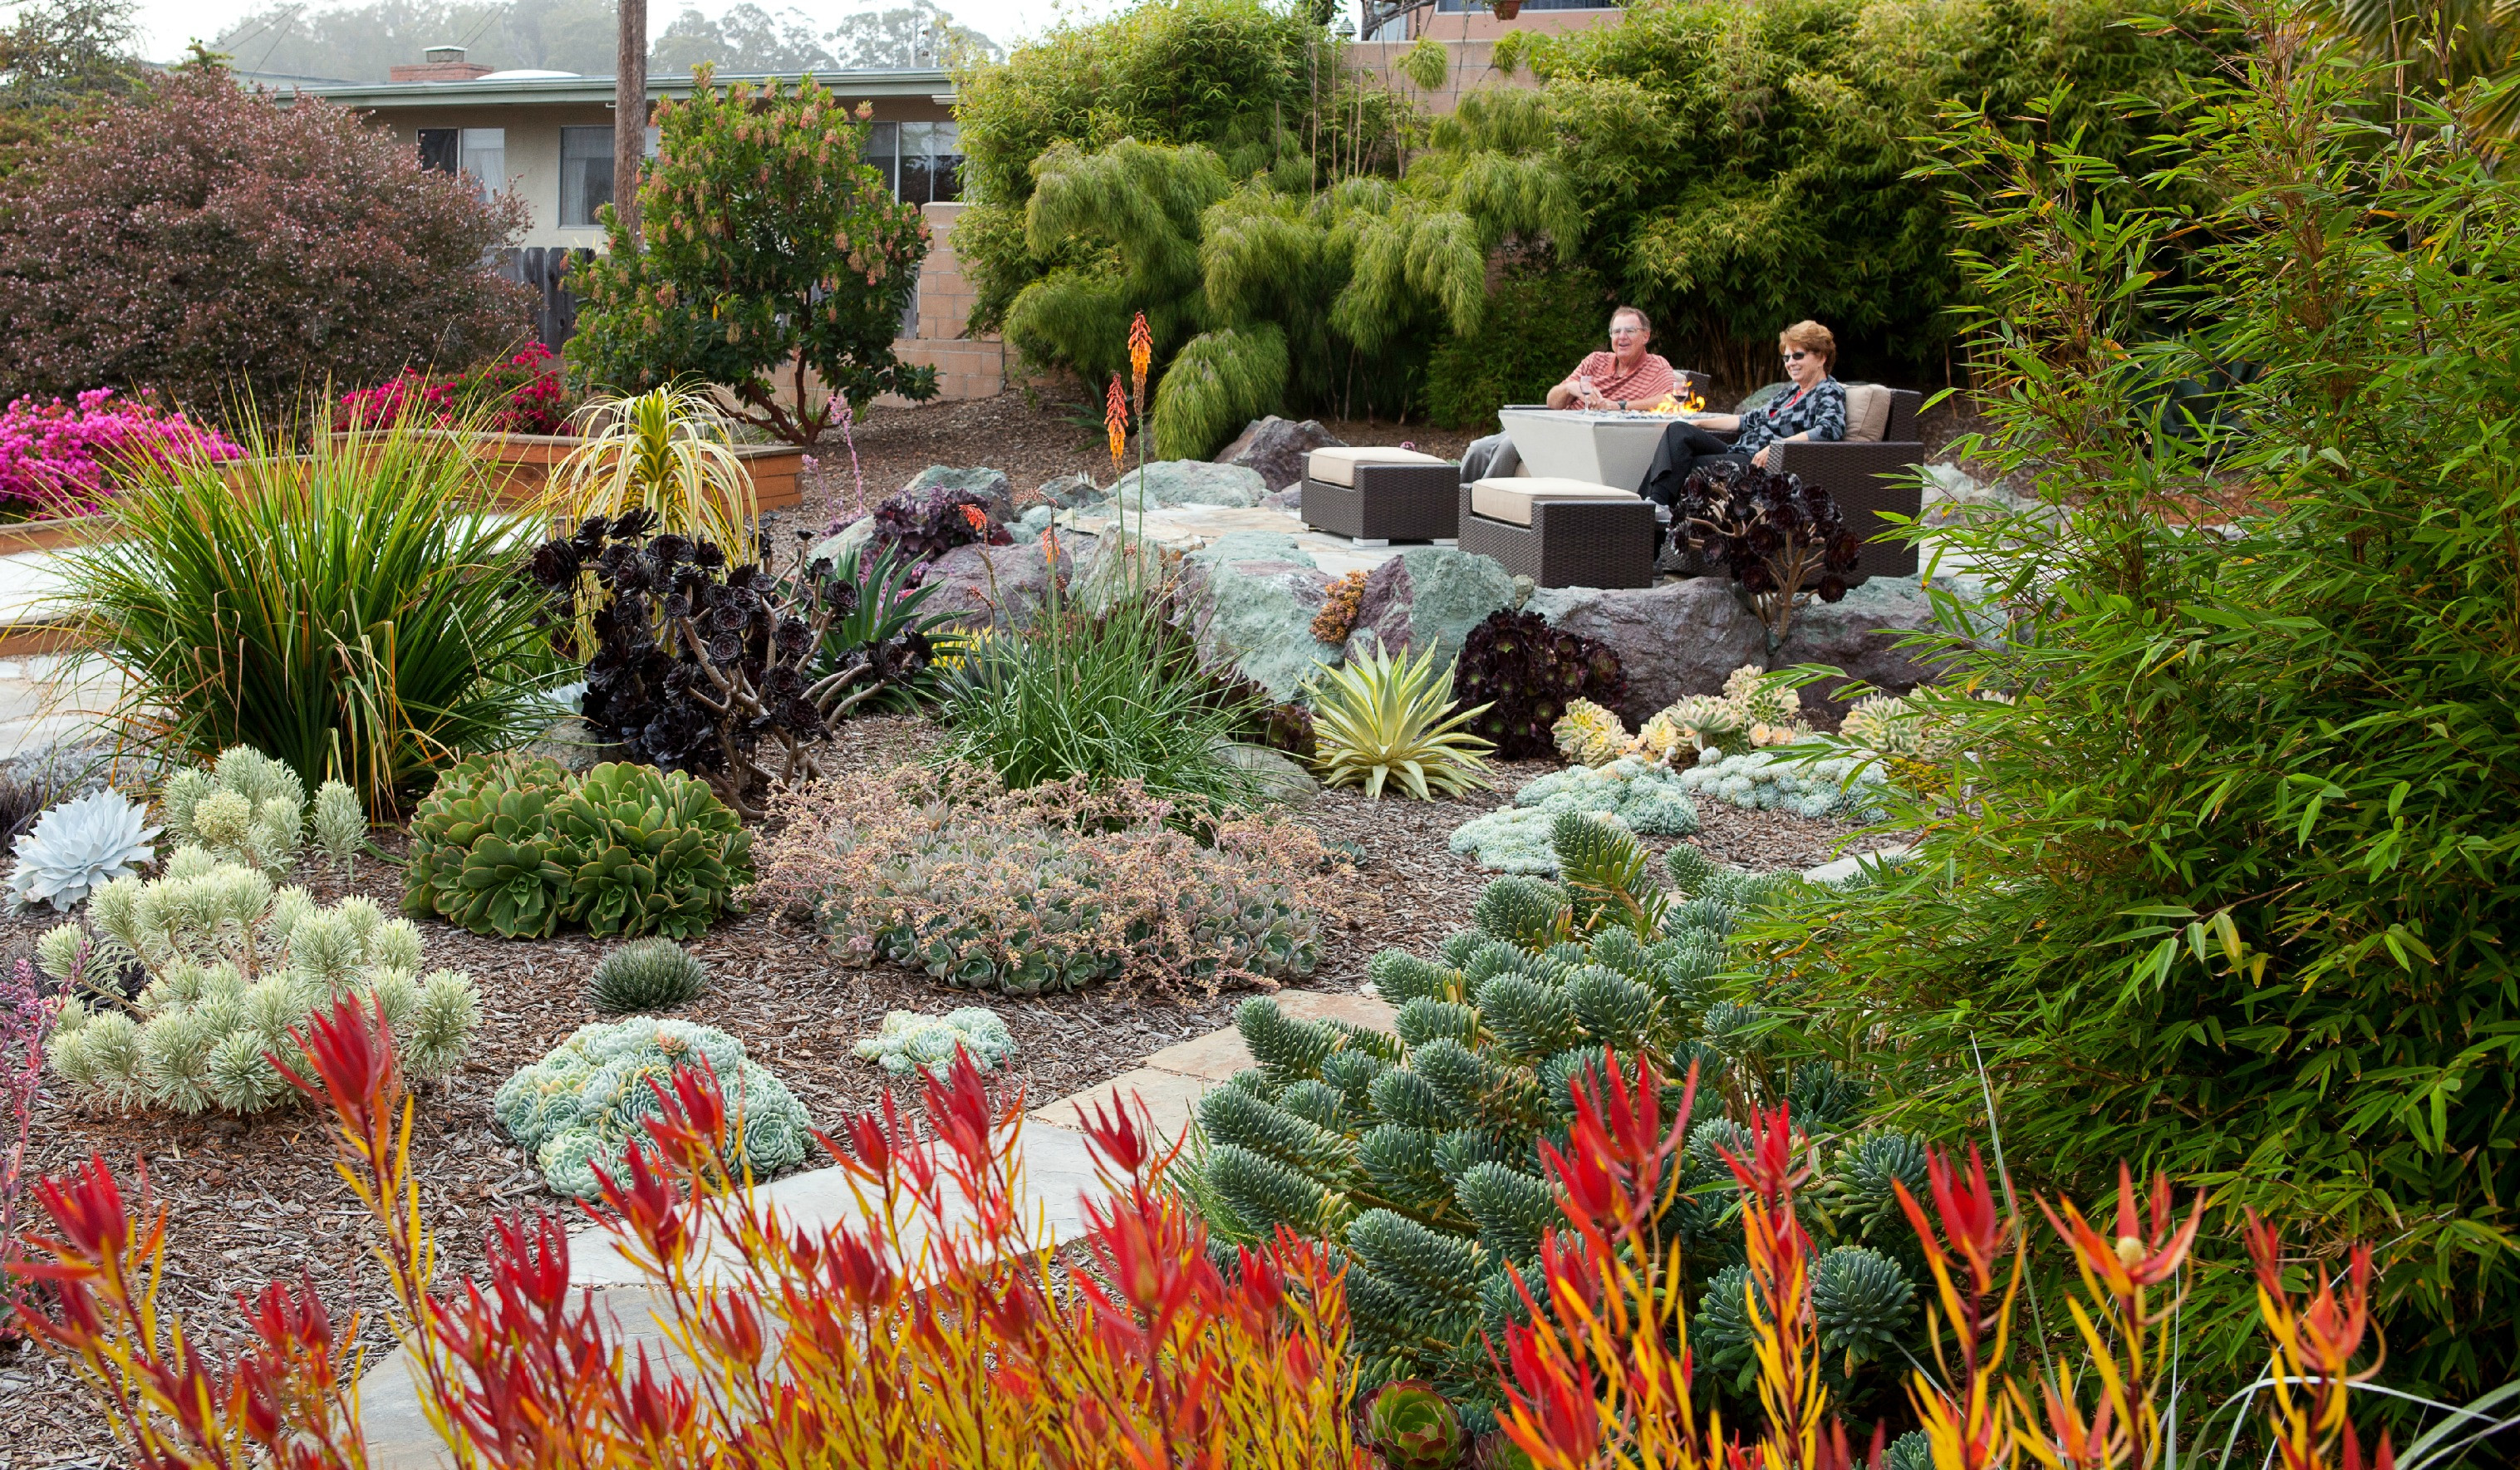 Best ideas about Drought Tolerant Plants Landscape Design
. Save or Pin Inspirations Succulent Plants Arizona Now.